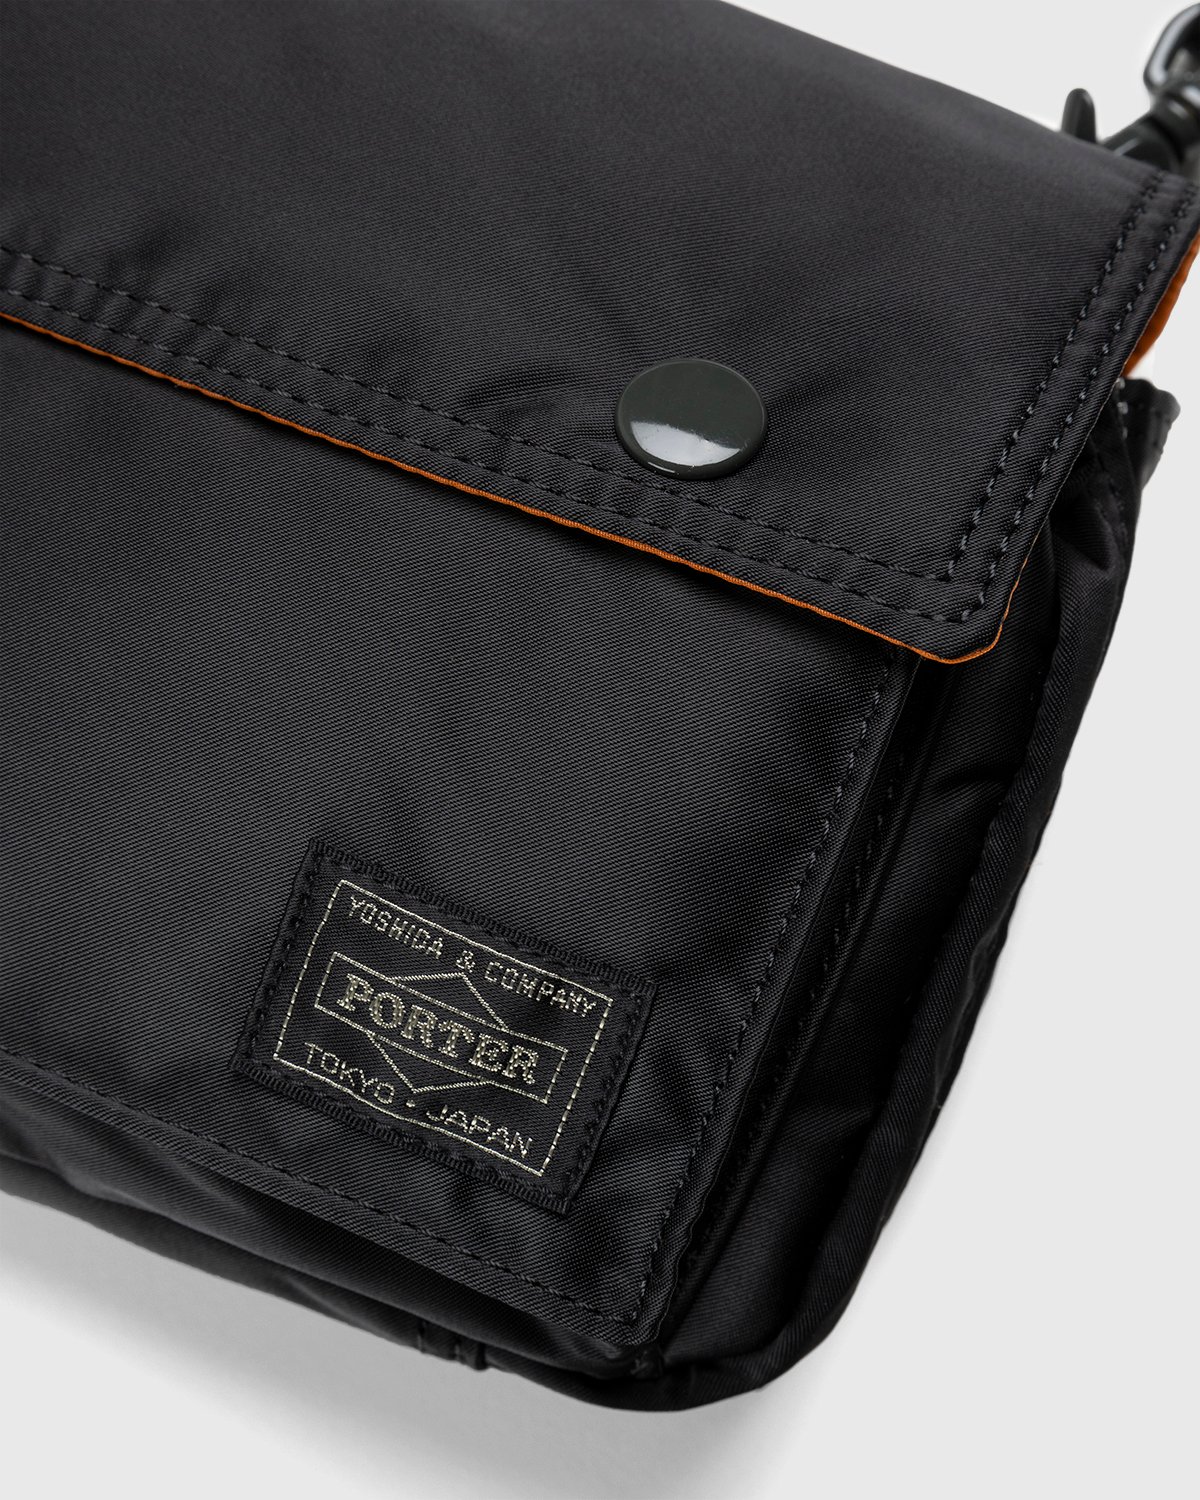 Porter-Yoshida & Co. - Tanker Clip Shoulder Bag Black - Accessories - Black - Image 4